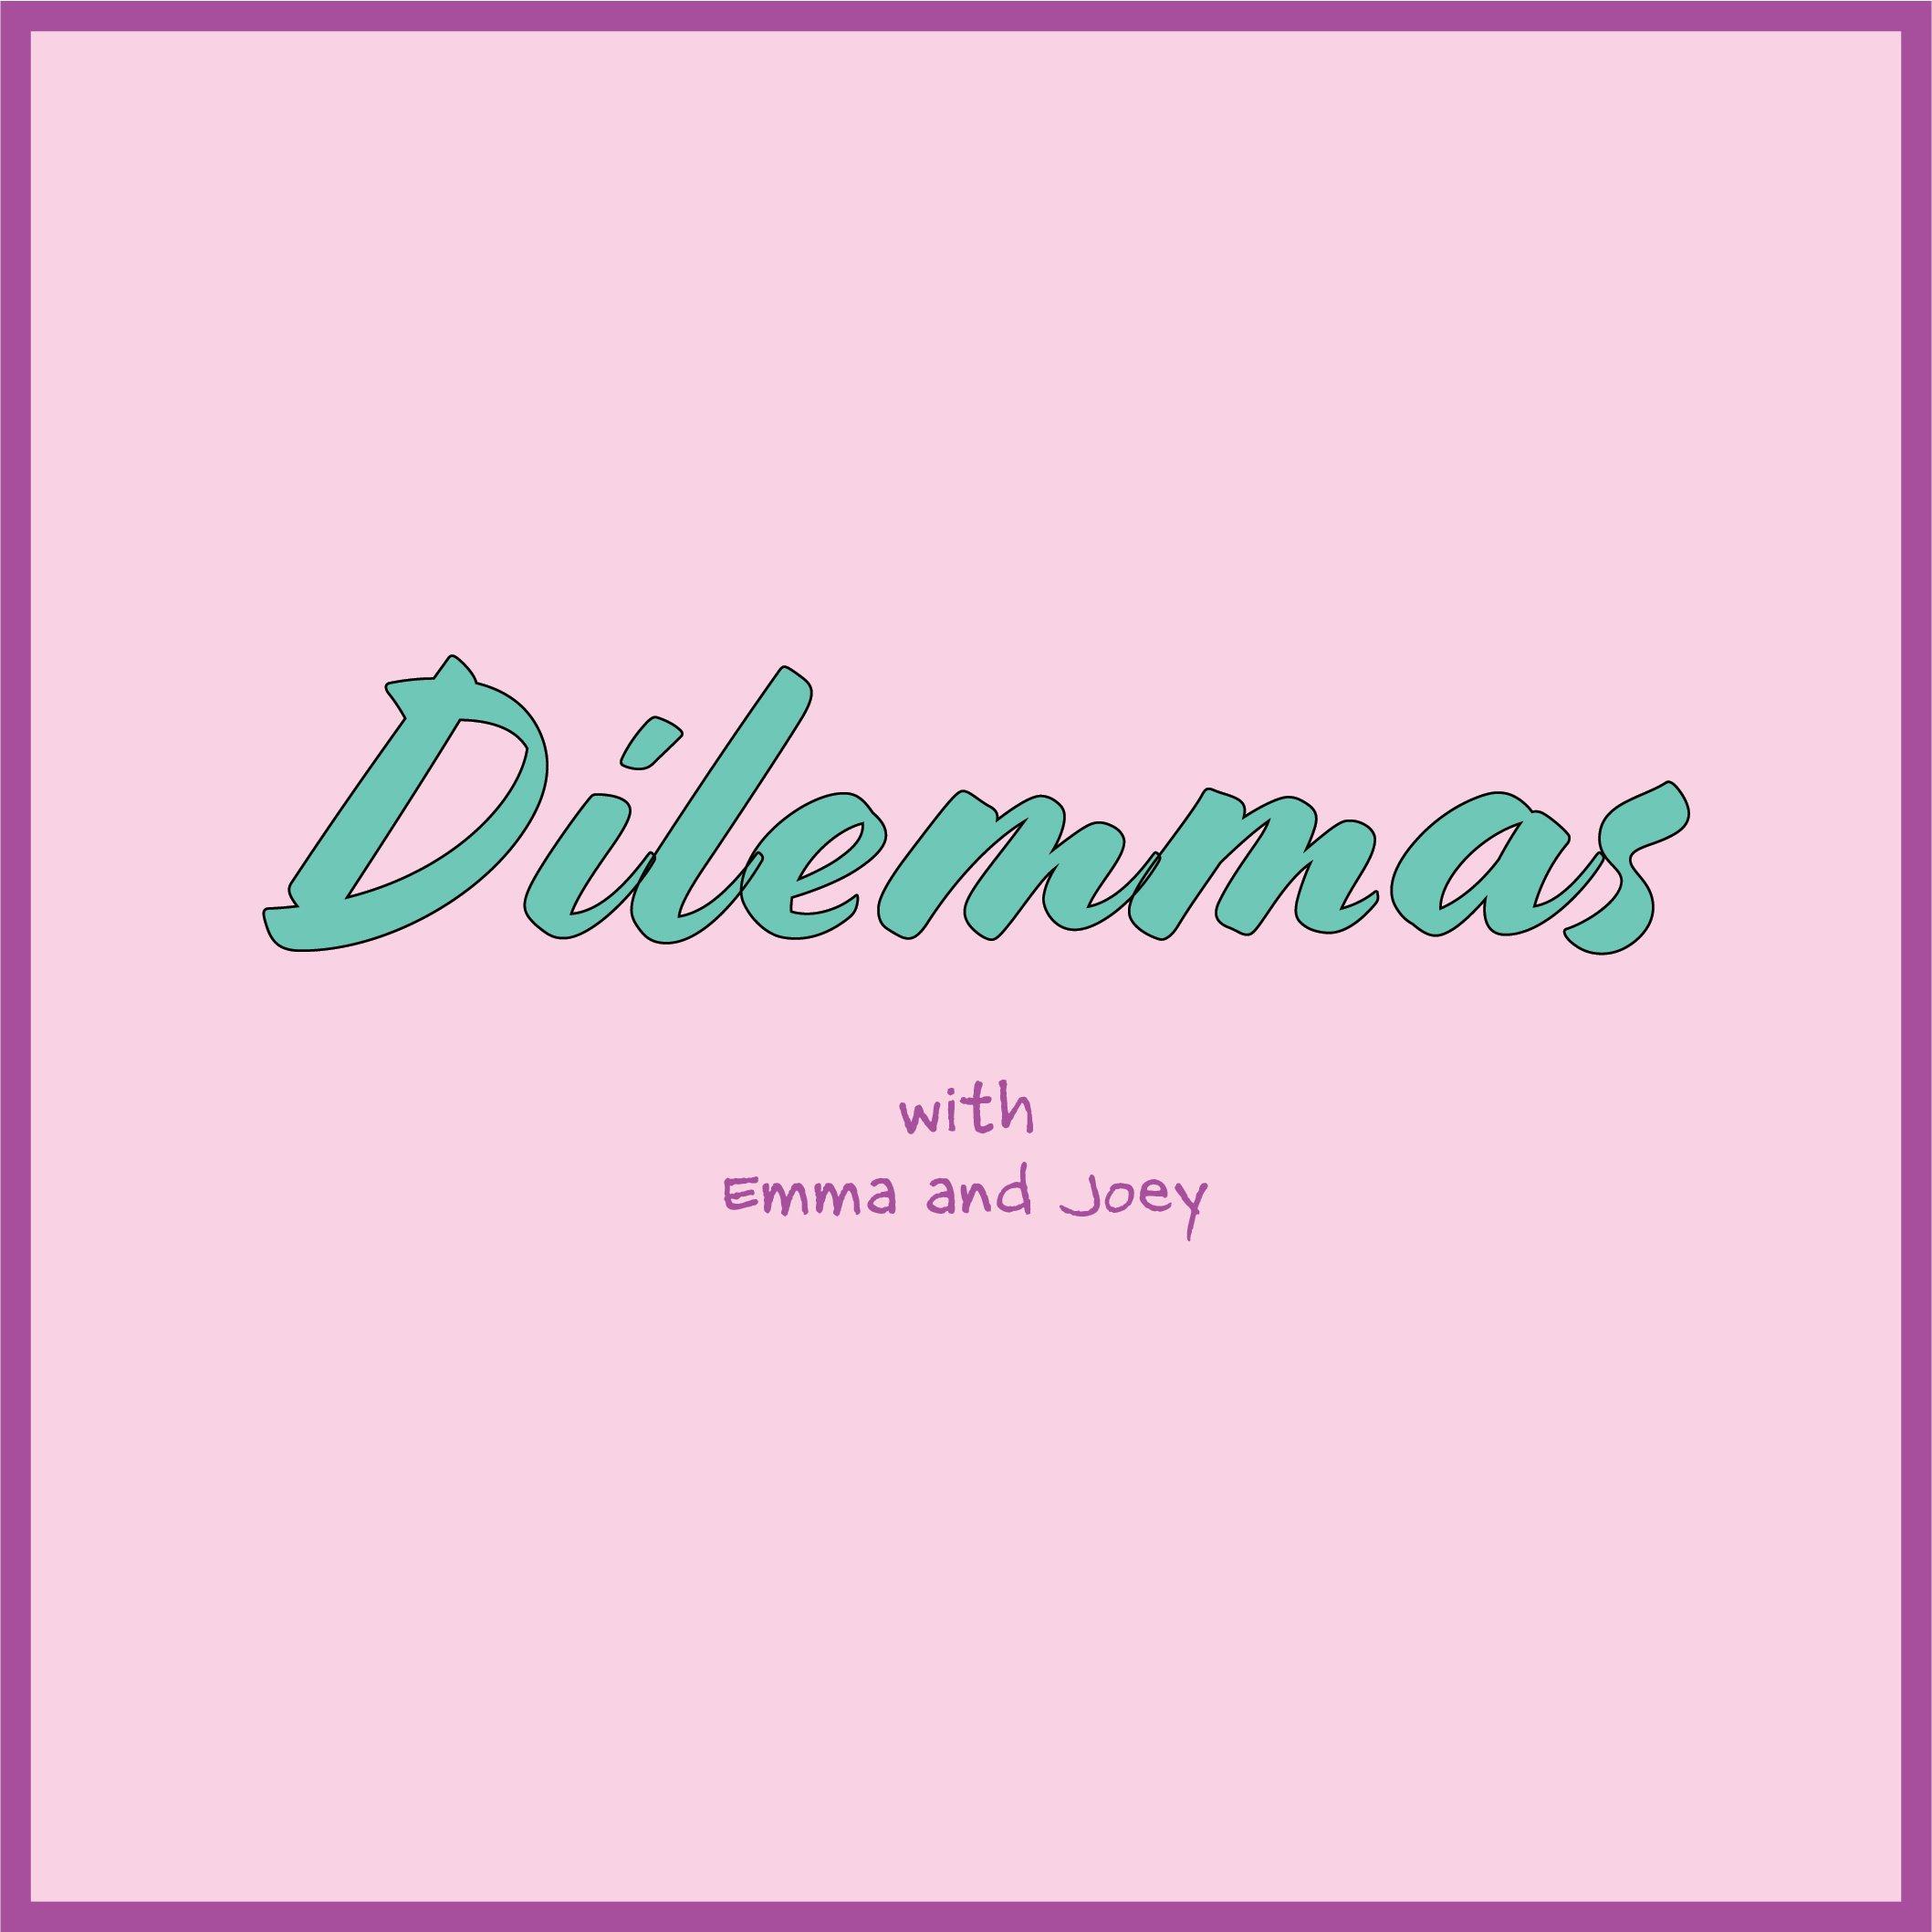 Dilemmas, with Emma and Joey